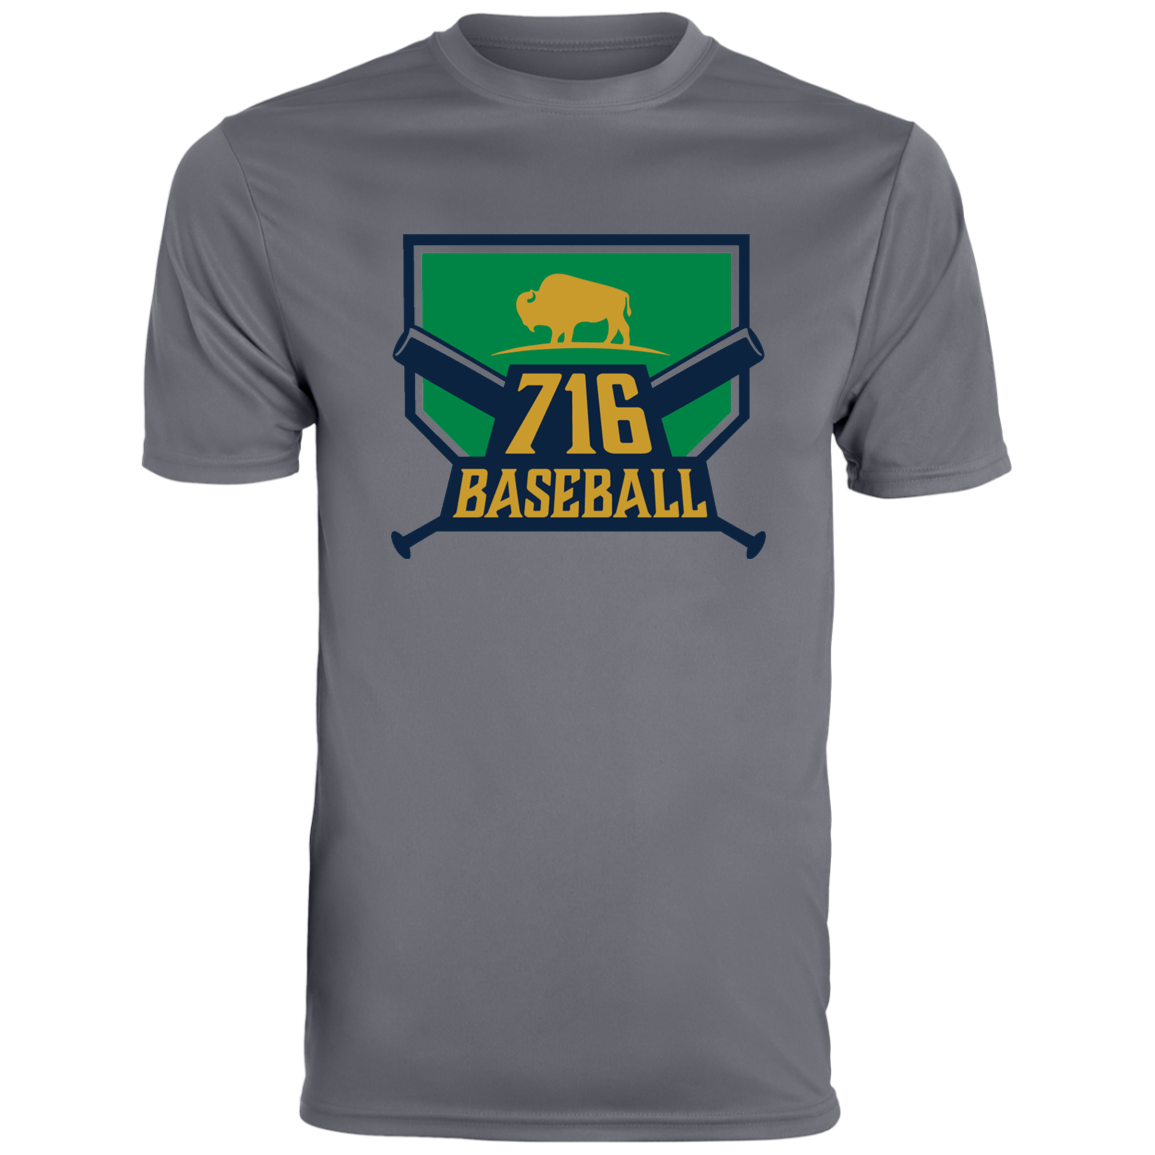 716 Baseball Men's Moisture-Wicking Tee